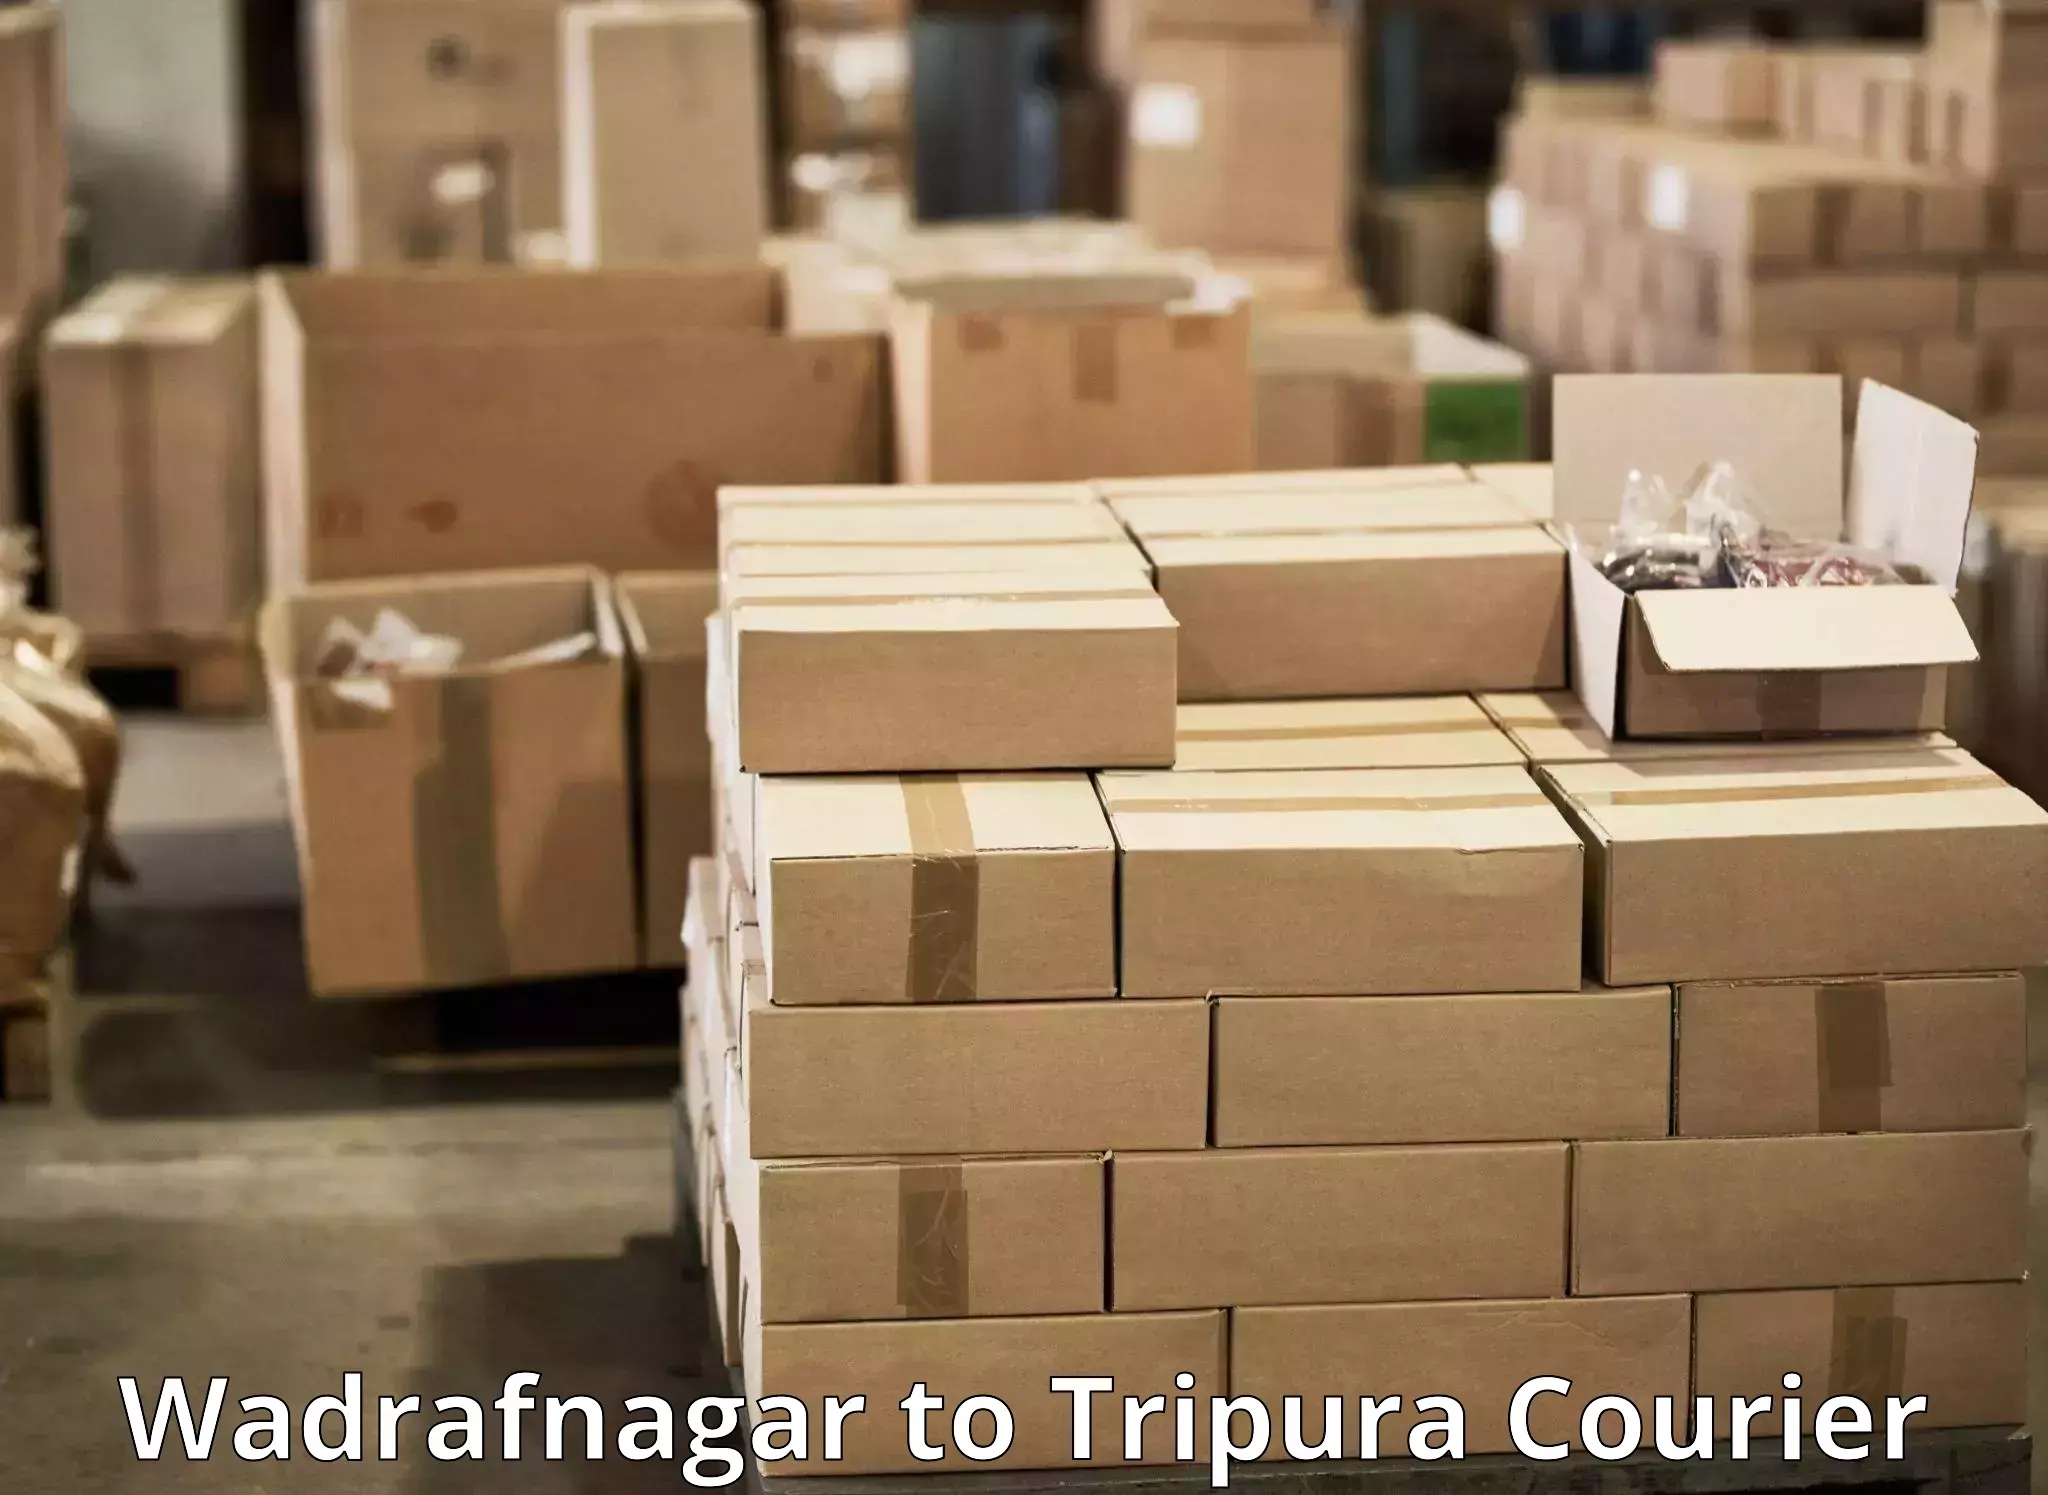 Doorstep delivery service Wadrafnagar to Udaipur Tripura